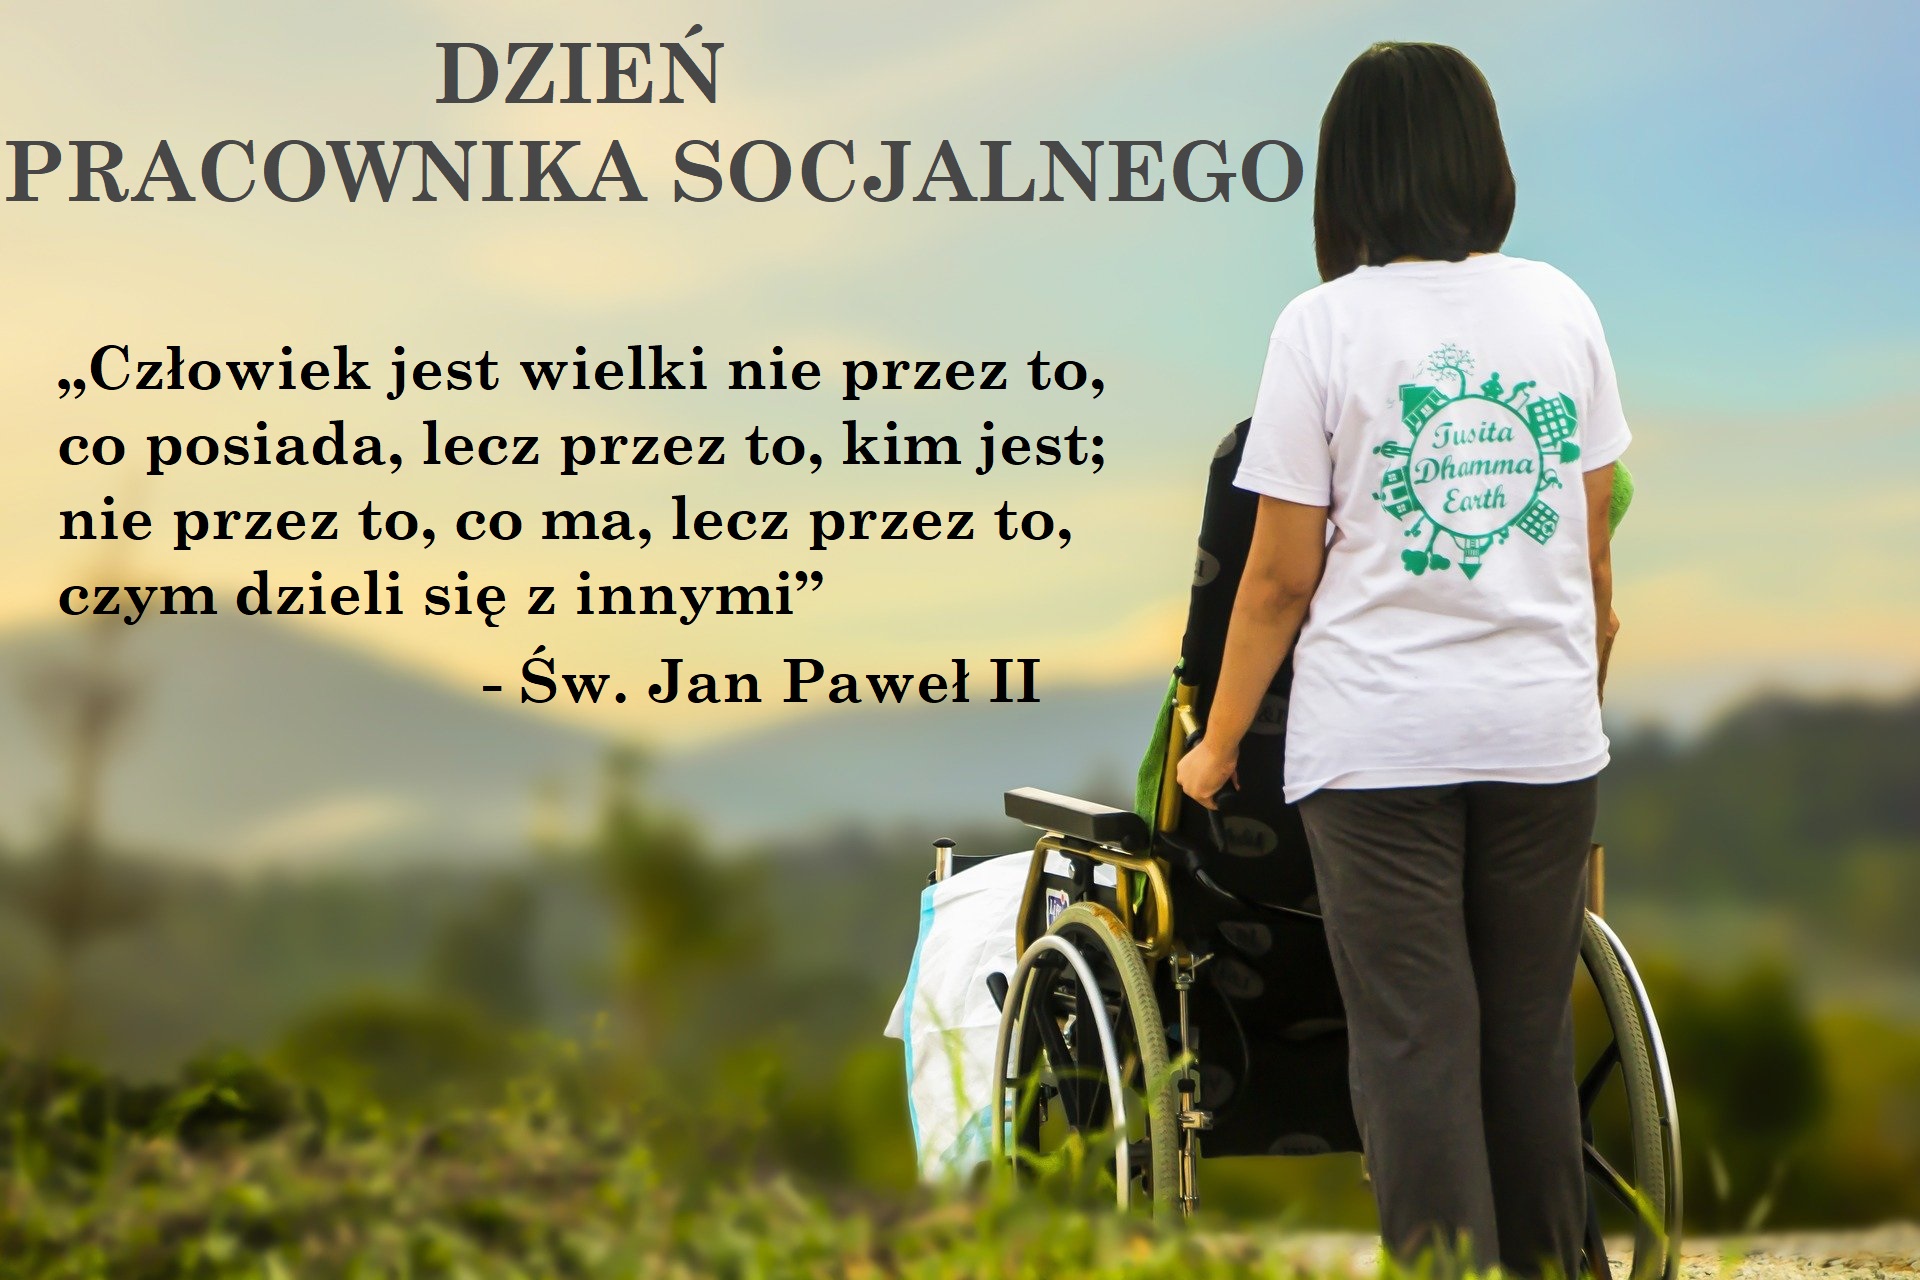 Dzień pracownka socjalnego , awatar na którym widac stojąca kobietępchającą wózek inwalidzki, na drugim planie góry, na obrazku cytat„Człowiek jest wielki nie przez to, co posiada, lecz przez to, kim jest; nie przez to, co ma, lecz przez to, czym dzieli się z innymi” - Św. Jan Paweł II